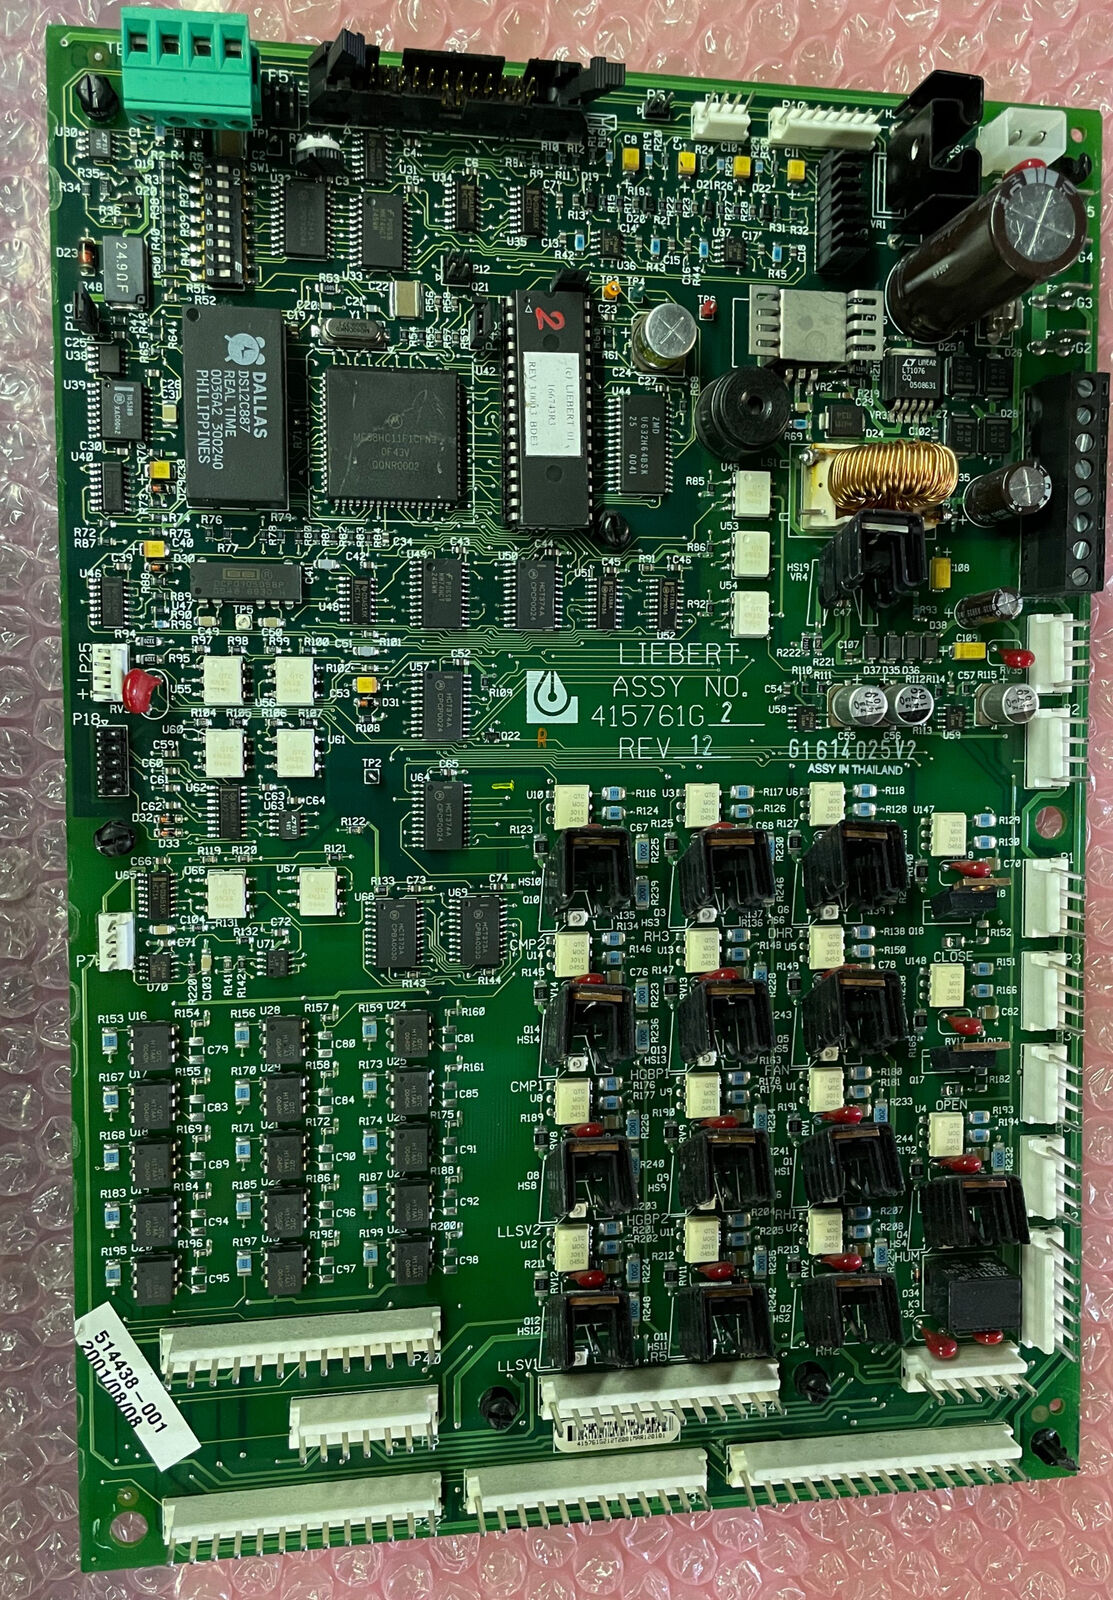 Liebert Assy NO. 415761 G Rev 12 Circuit Board